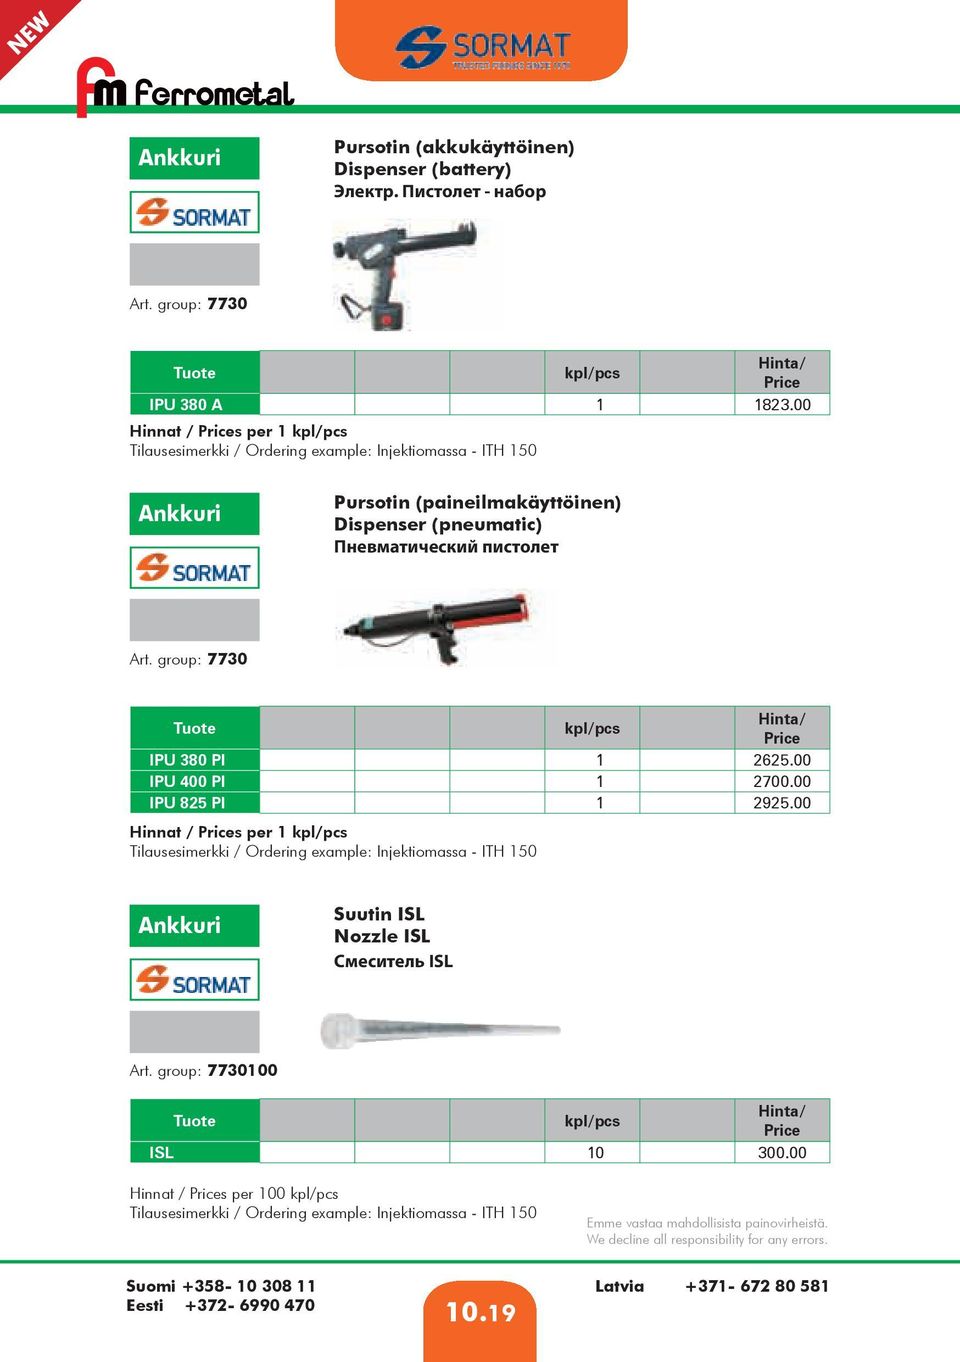 Пневматический пистолет Art. group: 7730 IPU 380 PI 1 2625.00 IPU 400 PI 1 2700.00 IPU 825 PI 1 2925.